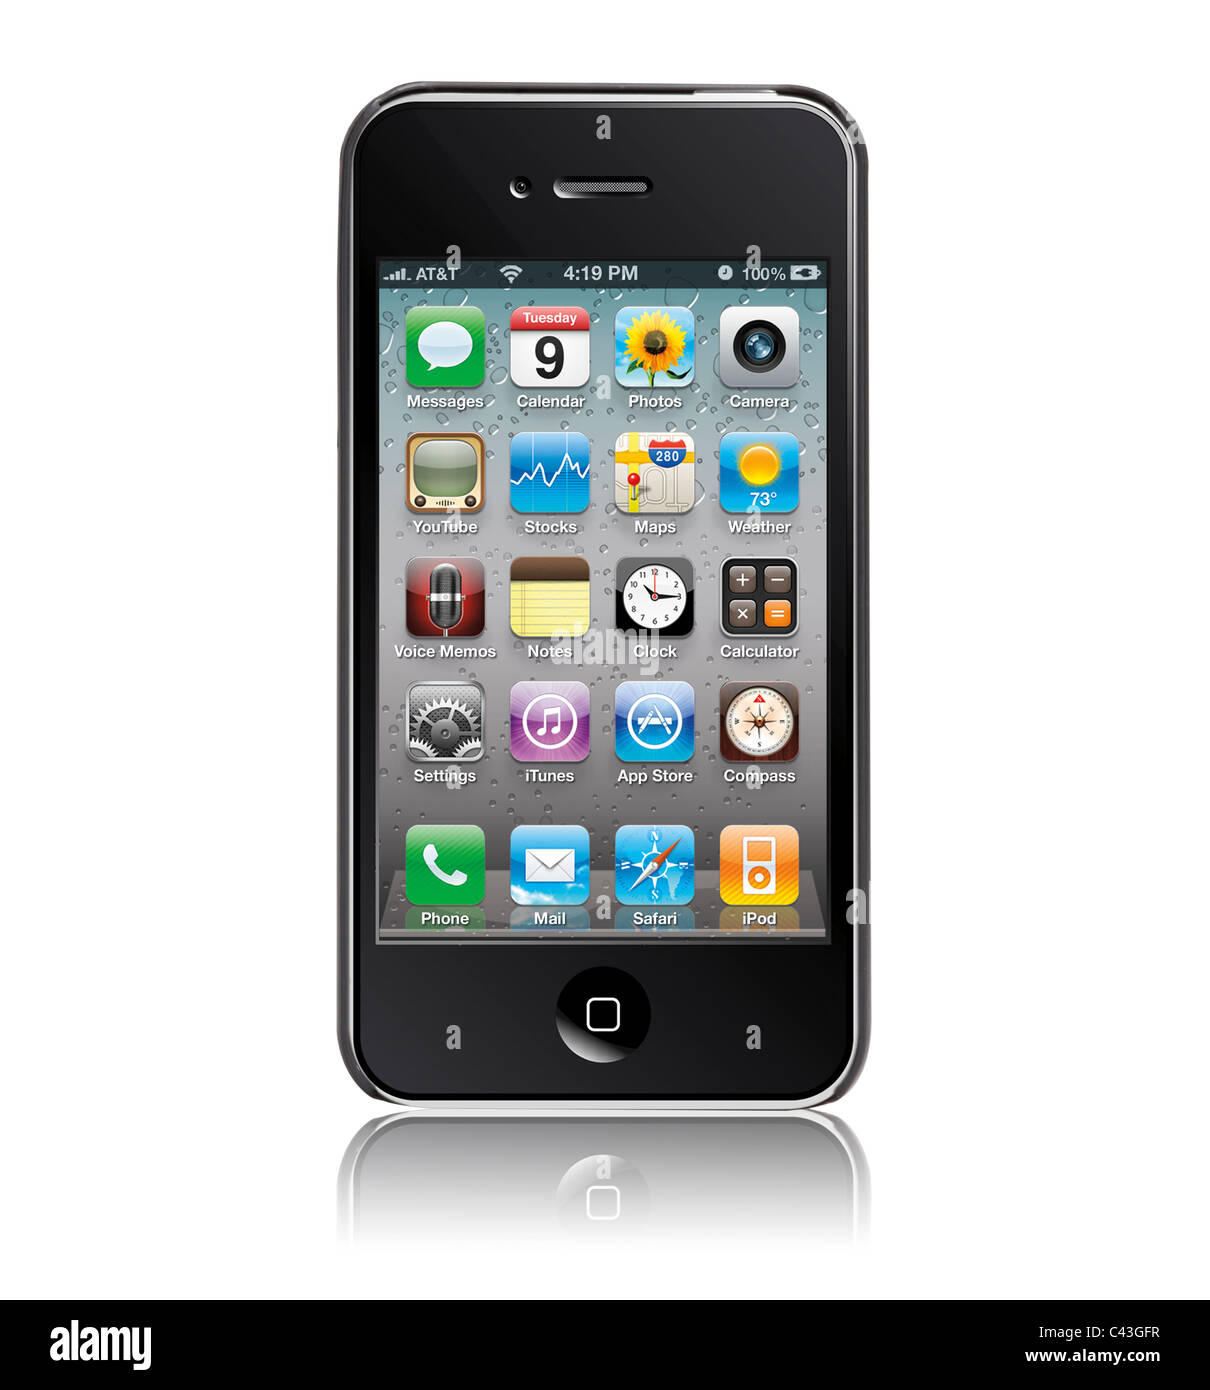 iPhone 4 trên nền trắng: Bạn yêu thích thiết kế đơn giản, tinh tế của iPhone 4 trên nền trắng? Hình ảnh này sẽ khiến bạn tò mò và muốn xem chi tiết hơn về sản phẩm này. Hãy xem hình ảnh và cùng tìm hiểu nhé. 